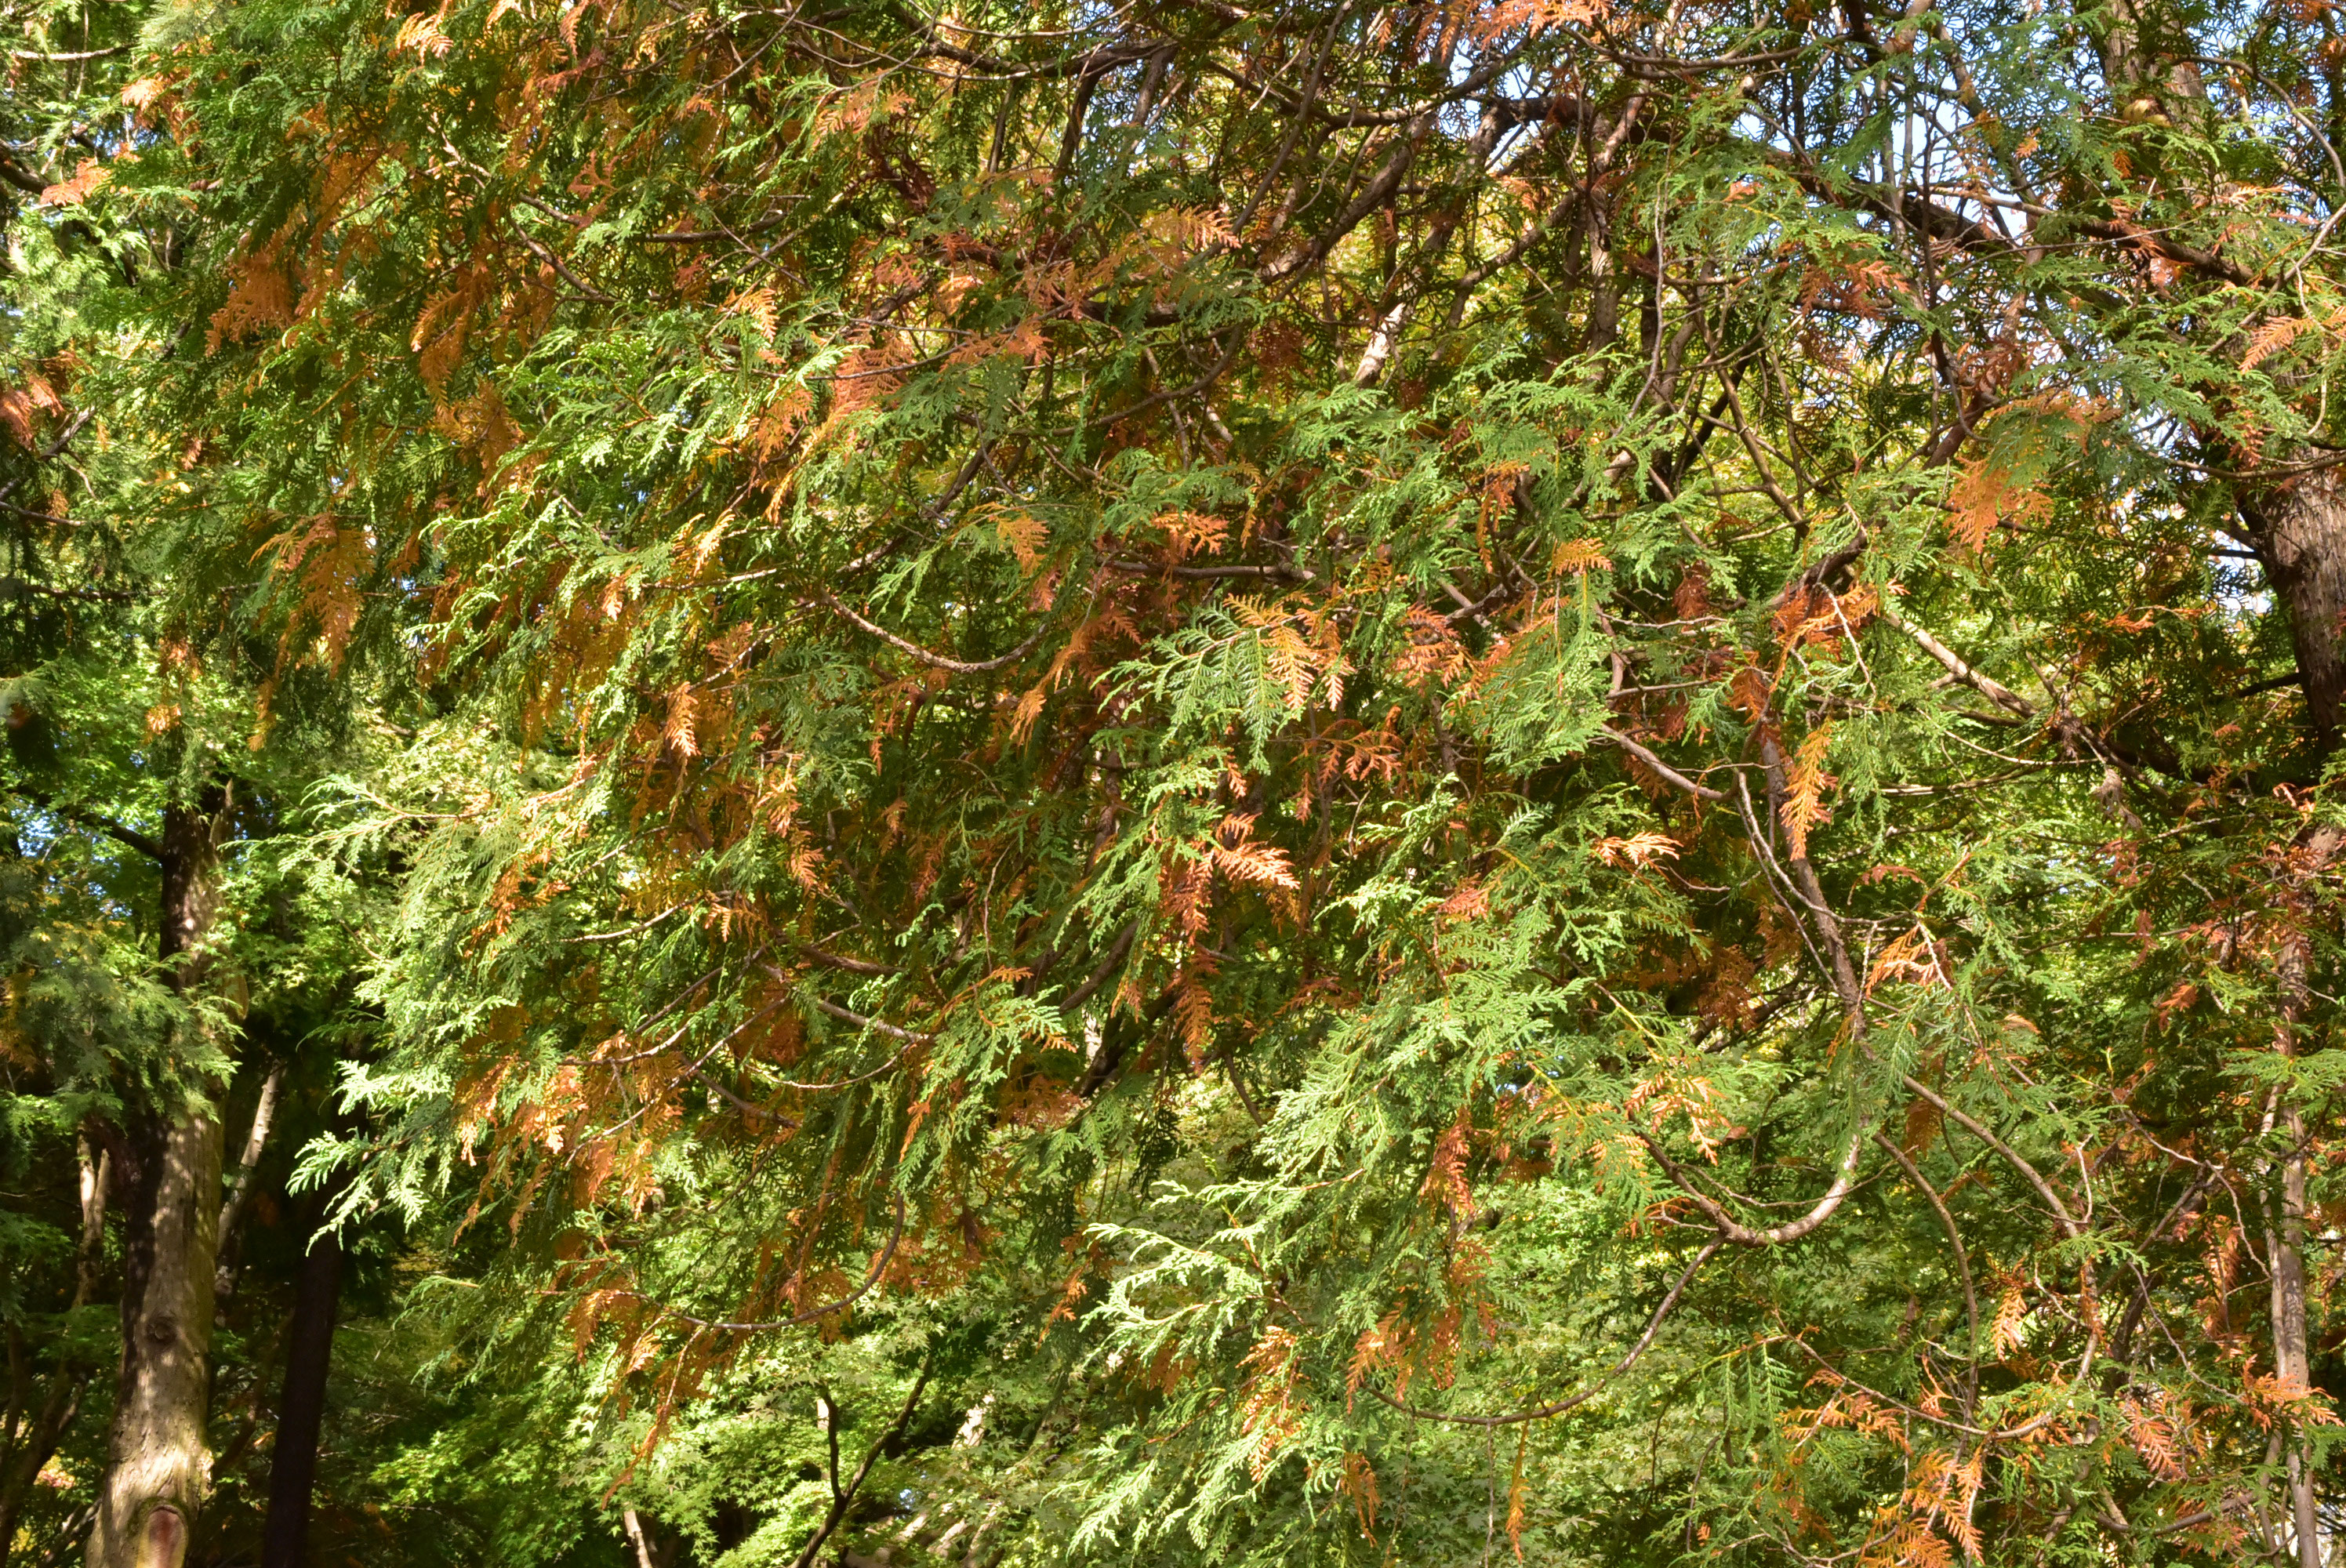 ニオイヒバ 匂檜葉 庭木図鑑 植木ペディア